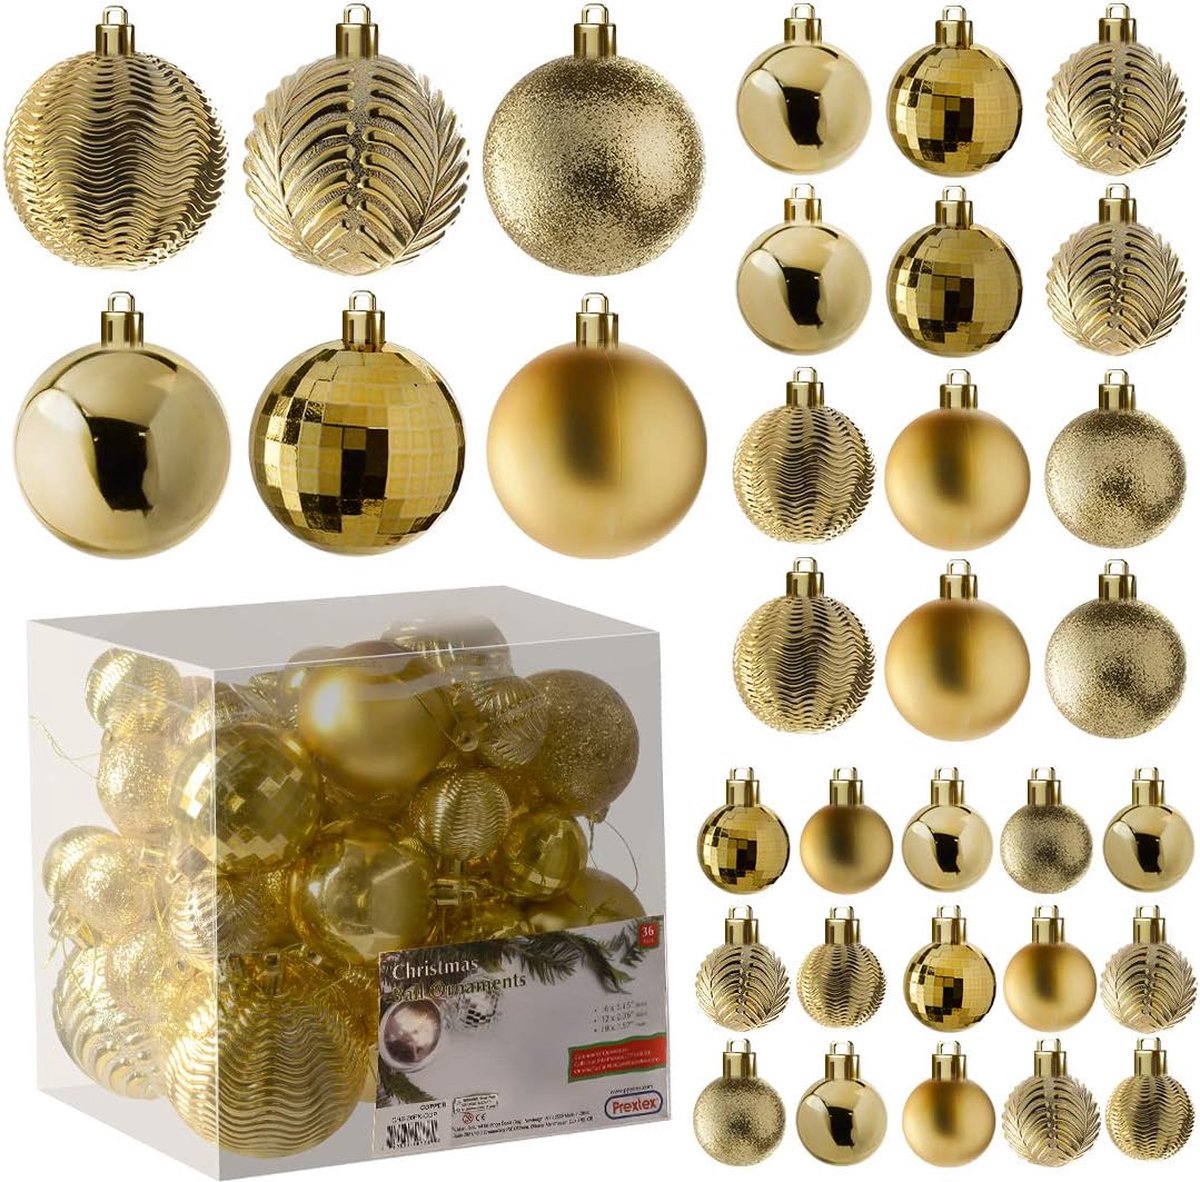 gouden kerstbalornamenten voor kerstversiering - 36 stuks kerstboom onbreekbare ornamenten met ophanglus voor vakantie- en feestdecoratie (combo van 6 stijlen in 3 maten)